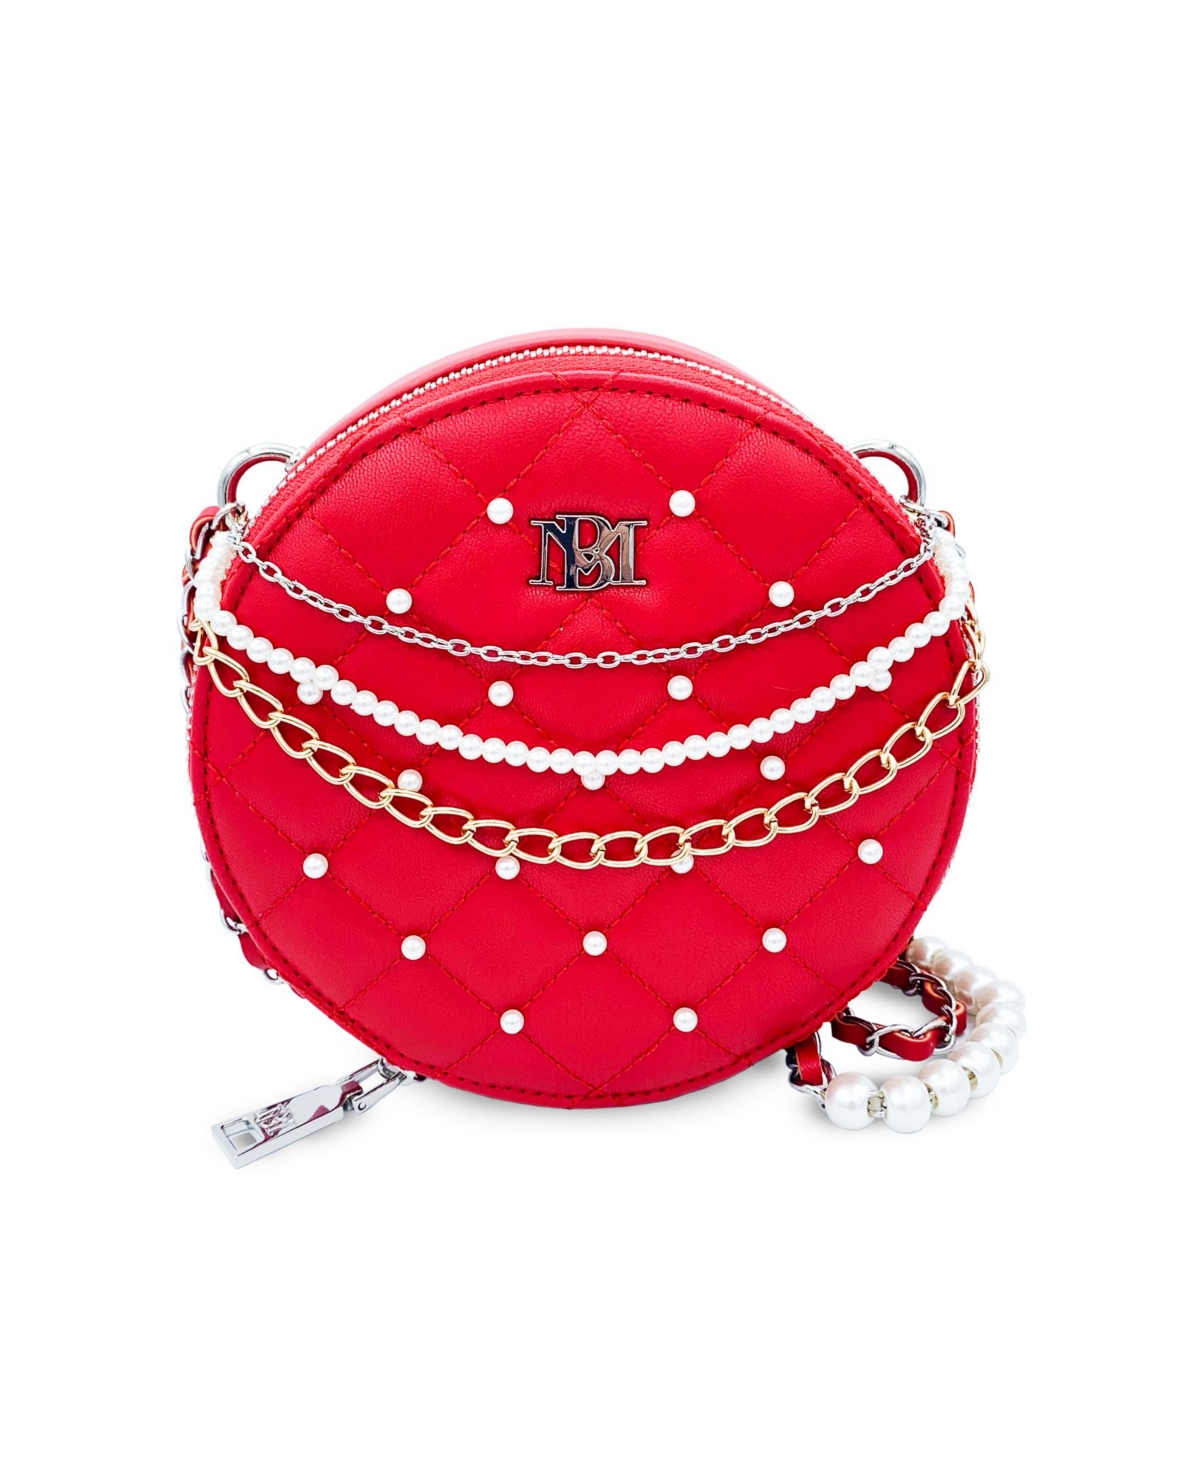 Women's Rounded Shoulder Handbag - Red